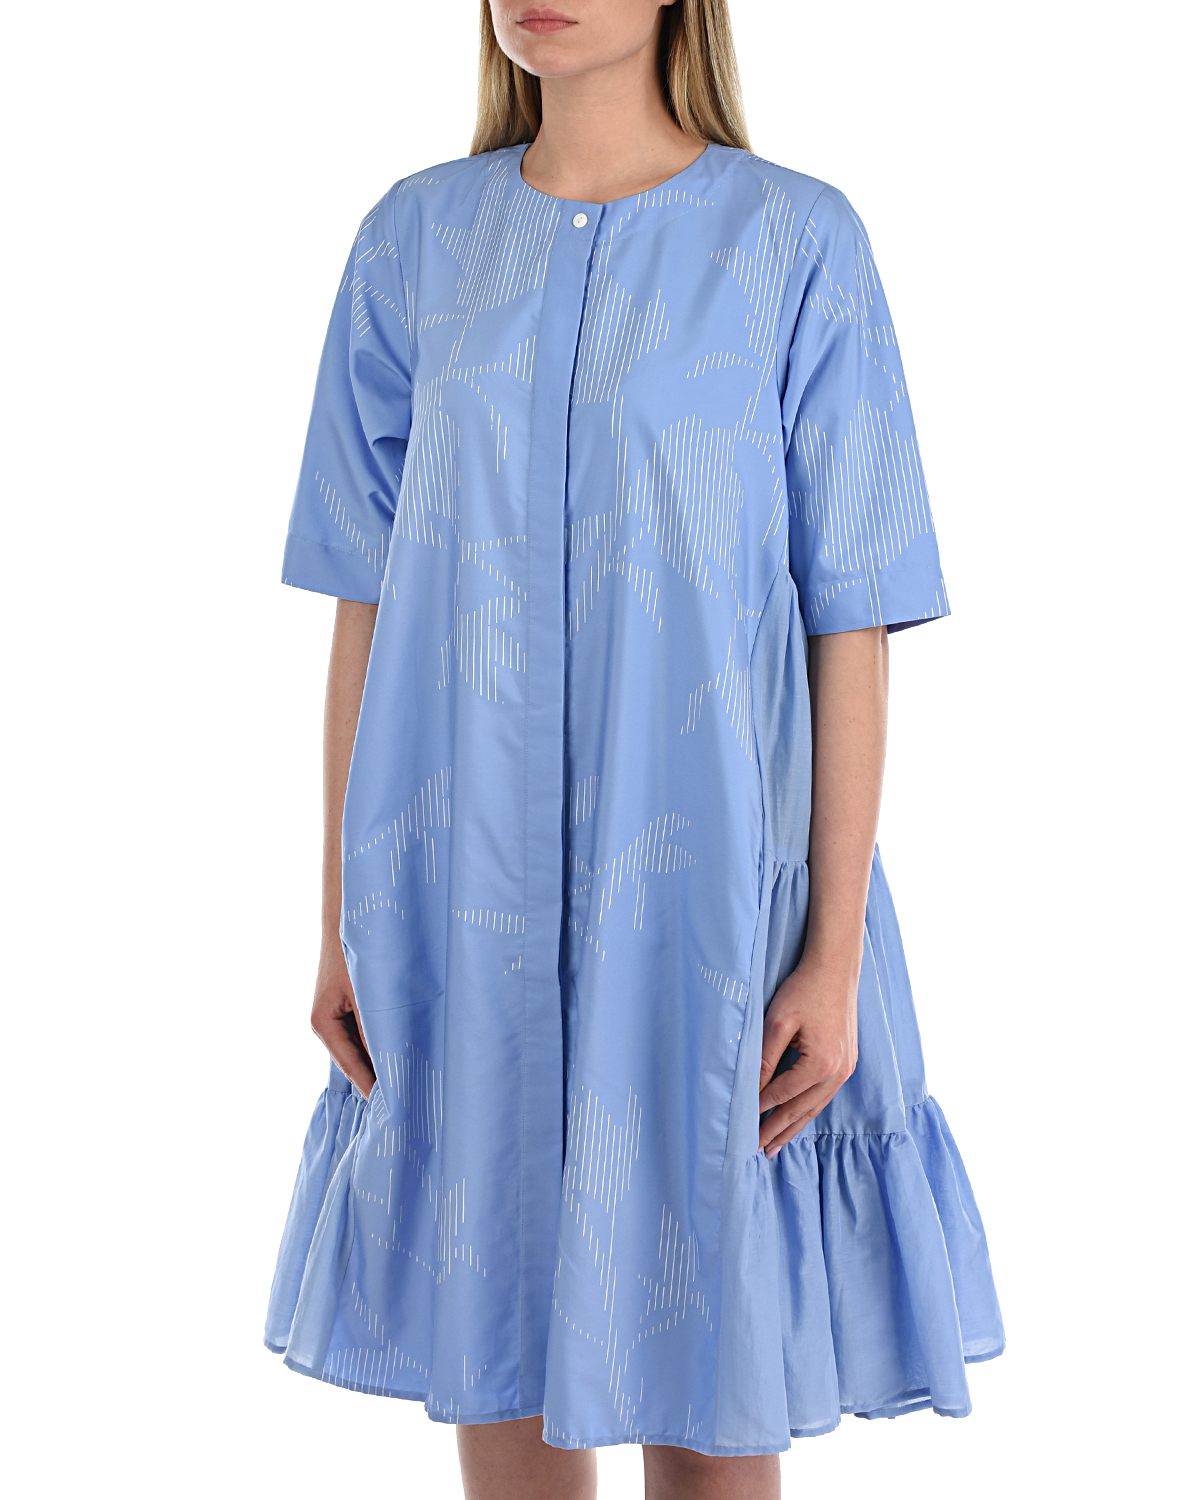 Голубое расклешенное платье LOVE BIRDS, размер 38, цвет голубой - фото 7